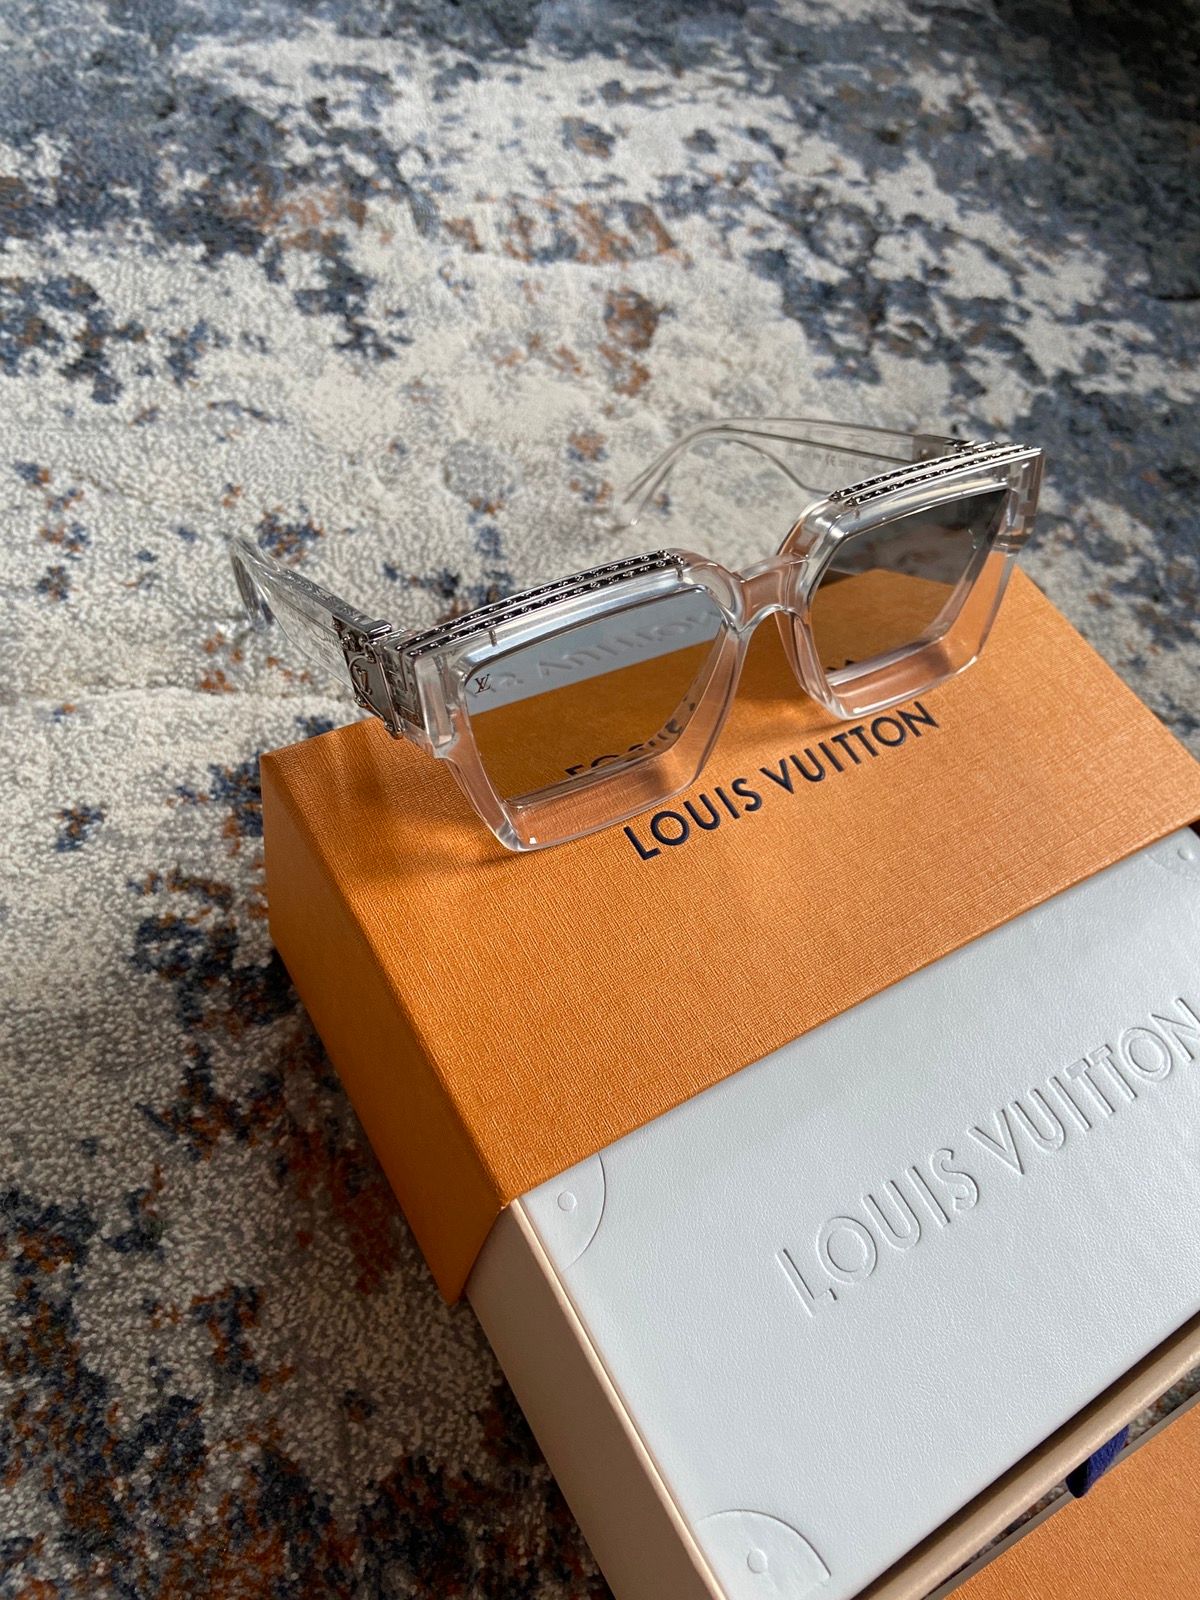 Louis Vuitton - 2054 1.1 Millionaires Sunglasses (Clear